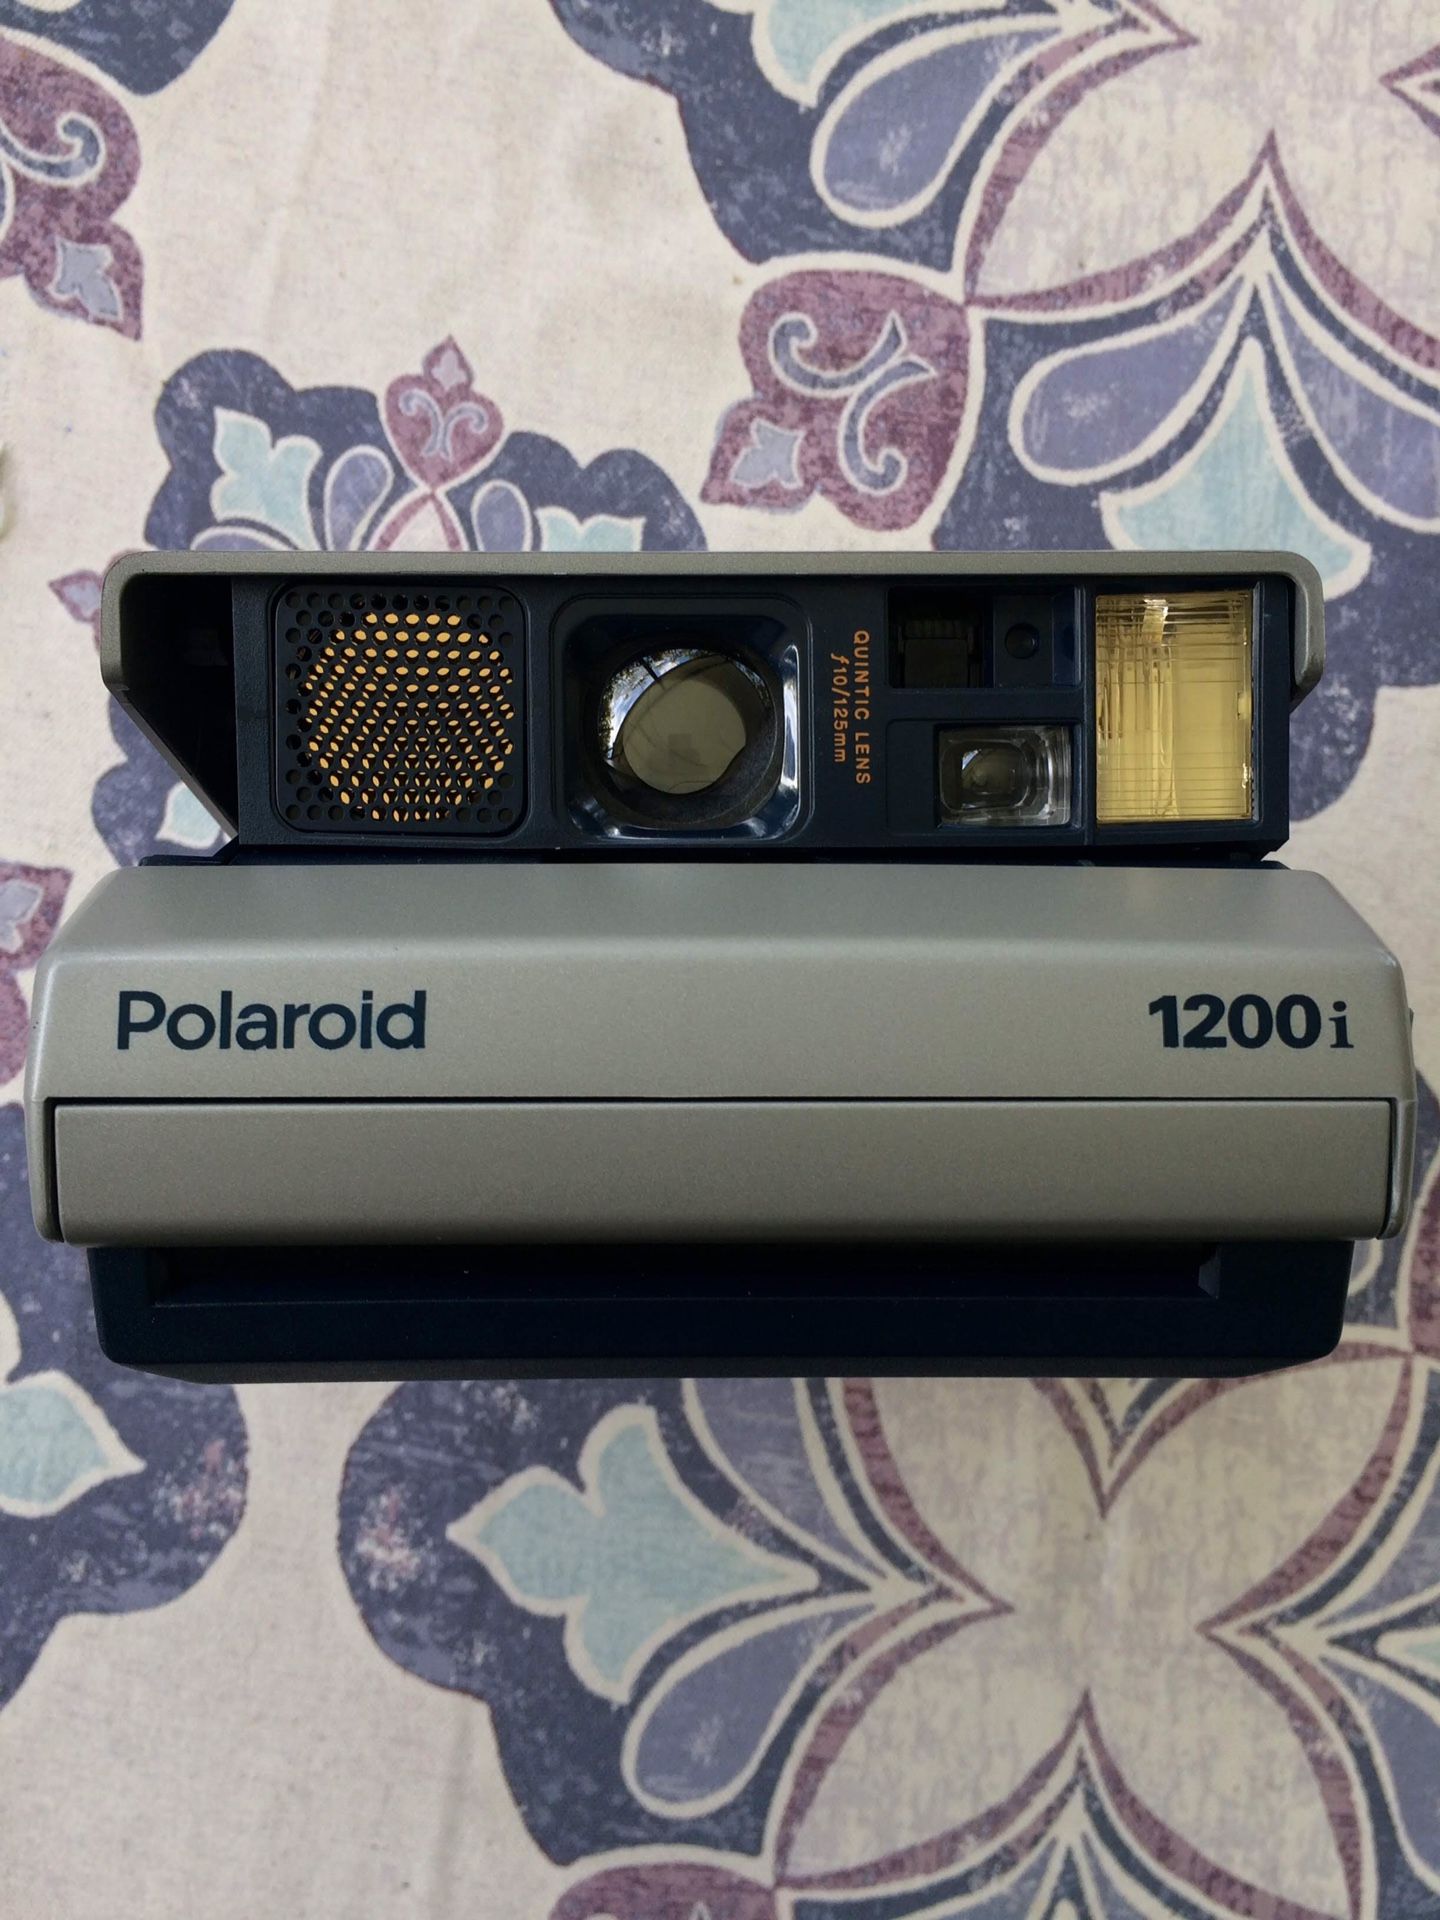 Polaroid spectra